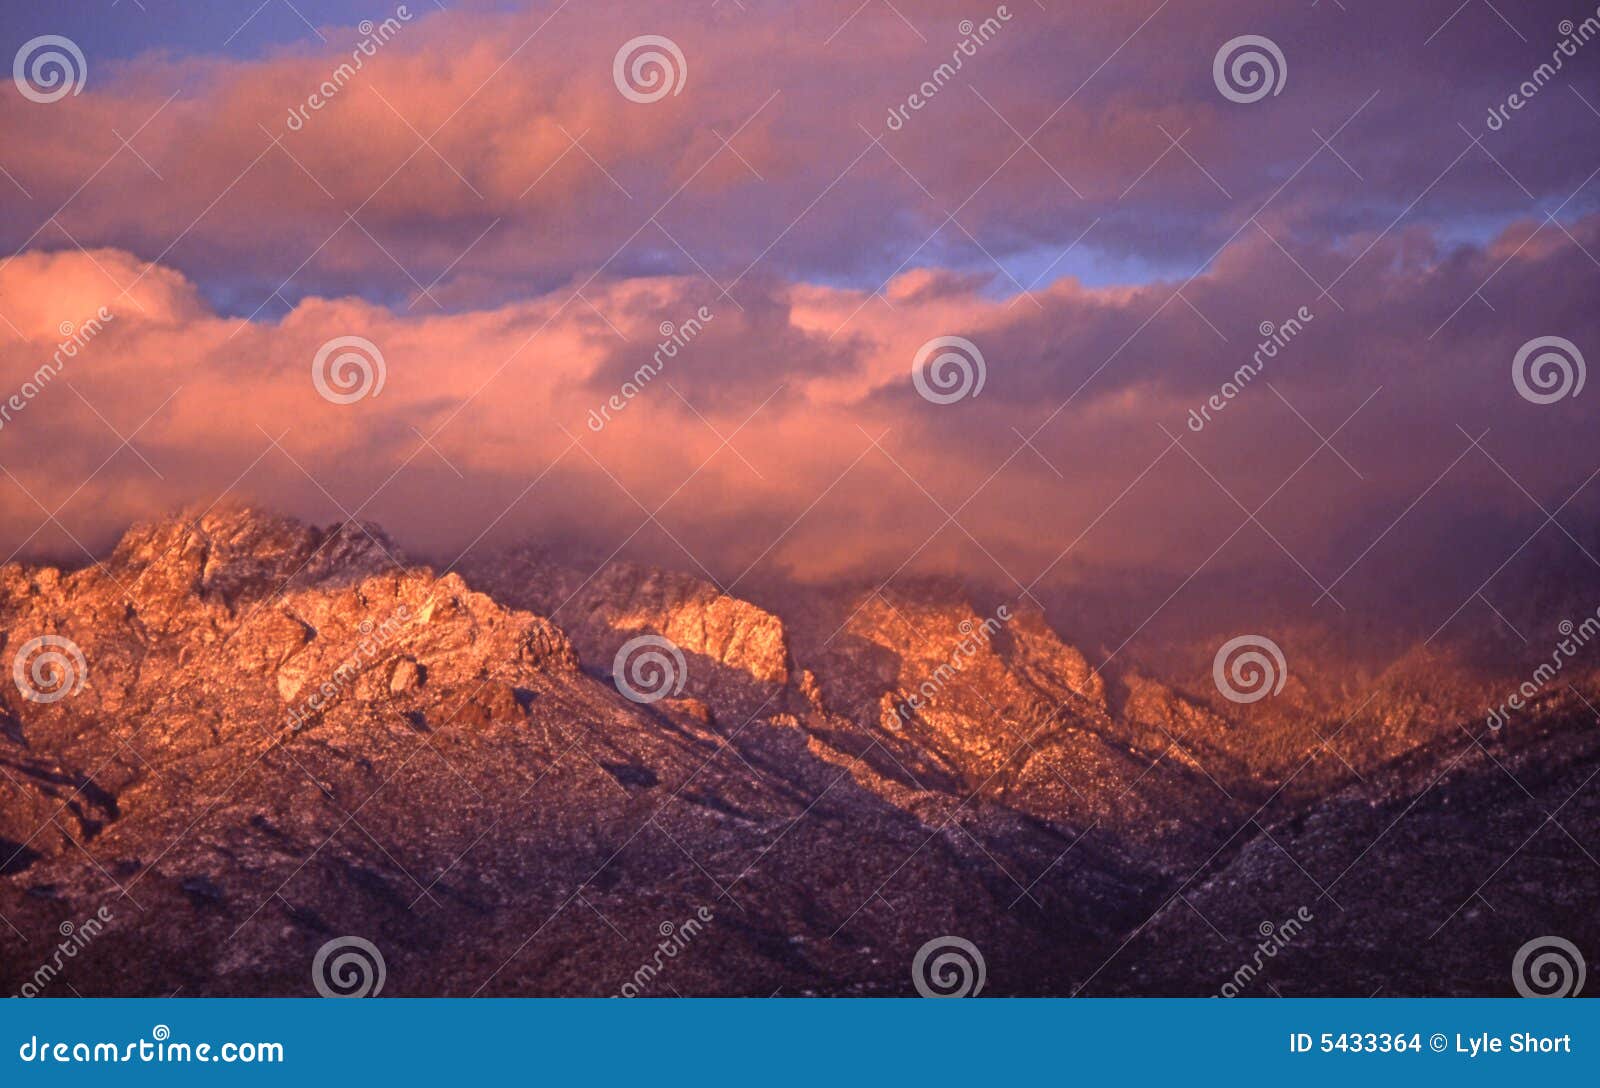 sandia peak in clouds at sunset